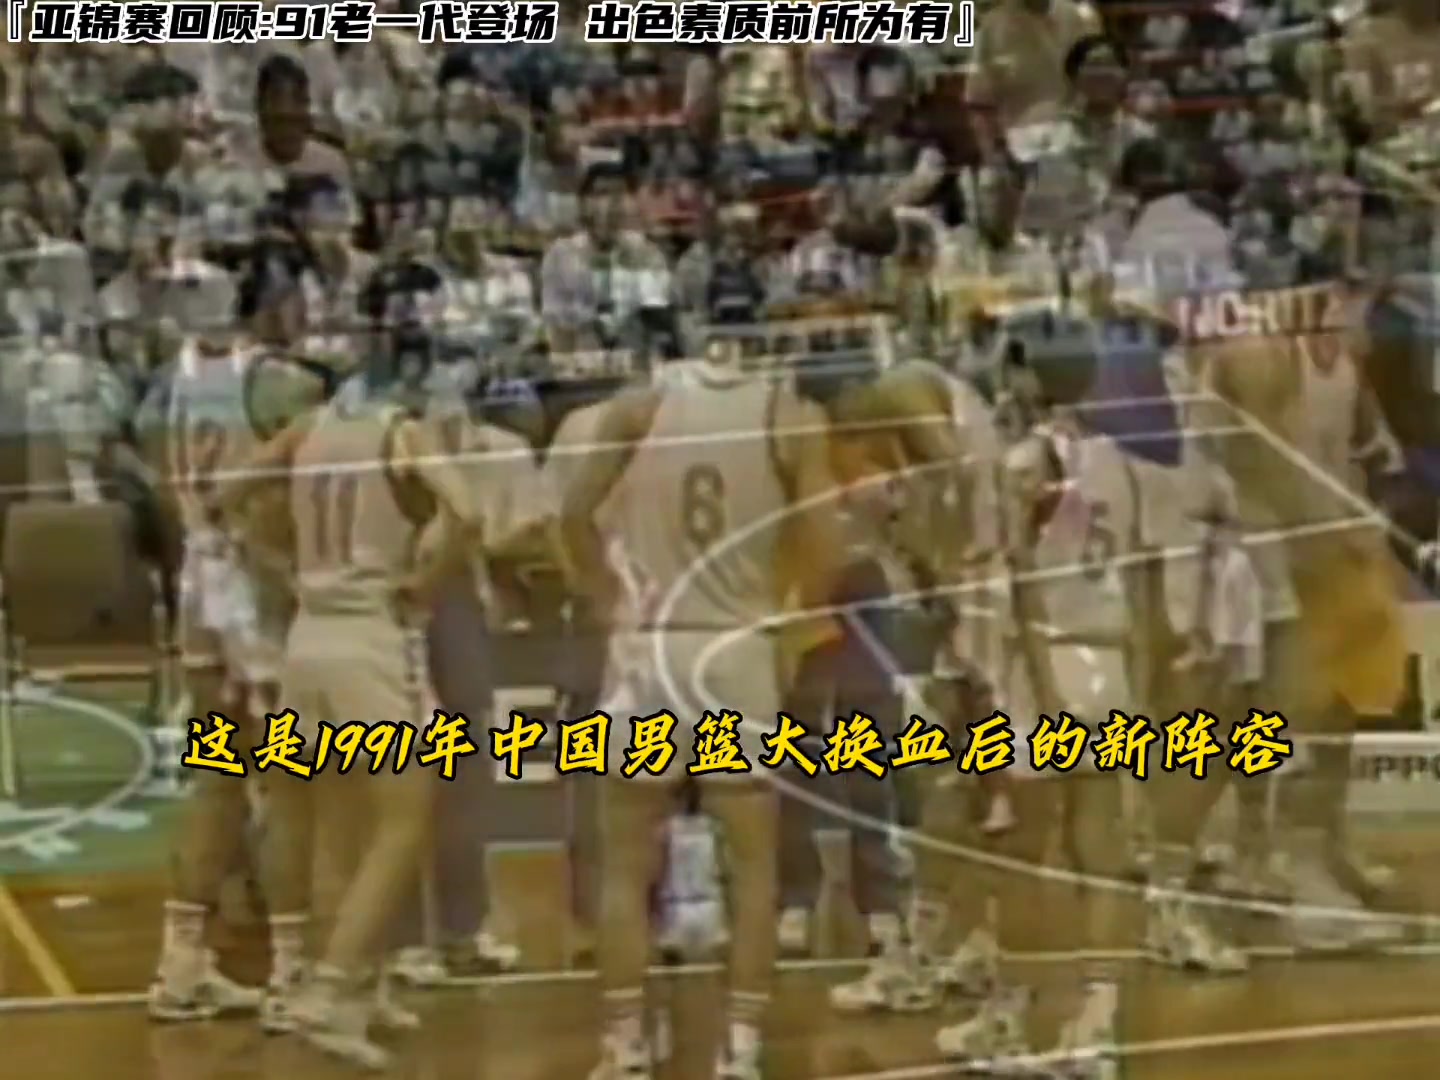 91年黄金一代中国男篮登场亚锦赛 出色素质前所未有 43分血洗日本